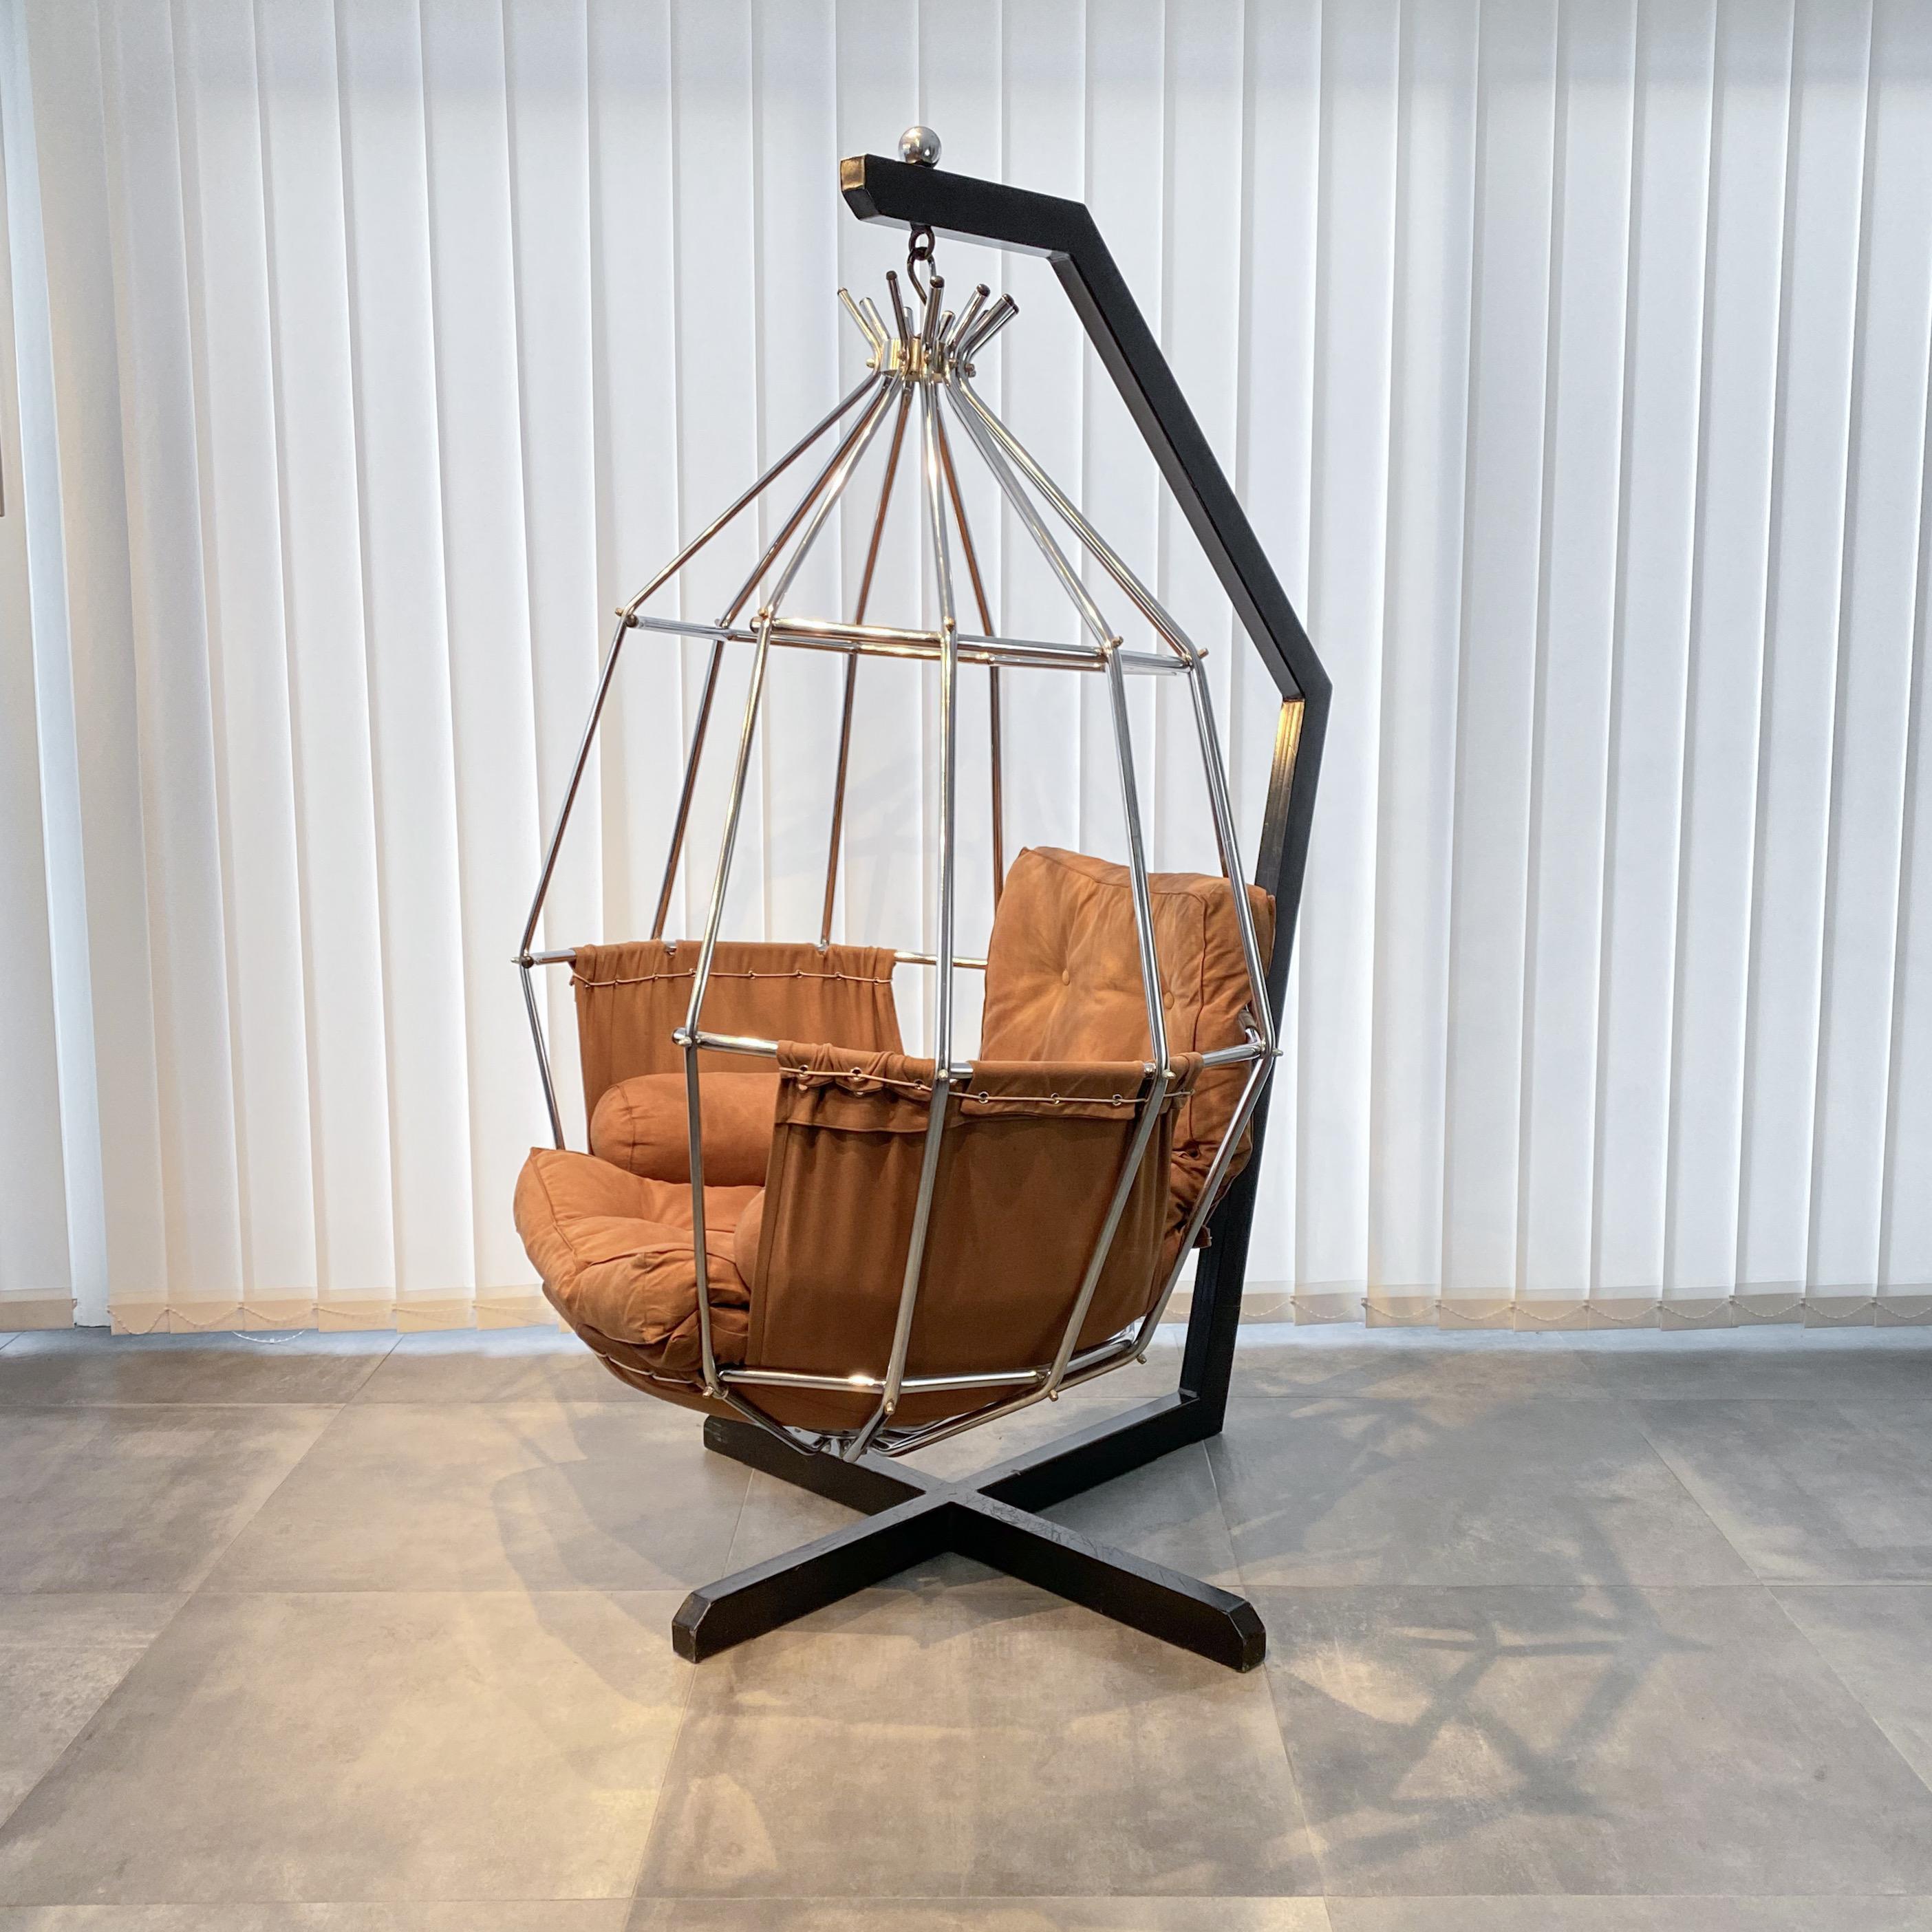 Fauteuil suspendu Gojan, conçu par l'architecte danois Ib Arberg pour le fabricant suédois ABRA Möbler. Cette chaise remarquable se caractérise par une cage en métal chromé suspendue à une base en acier noir. Il a conservé son revêtement textile